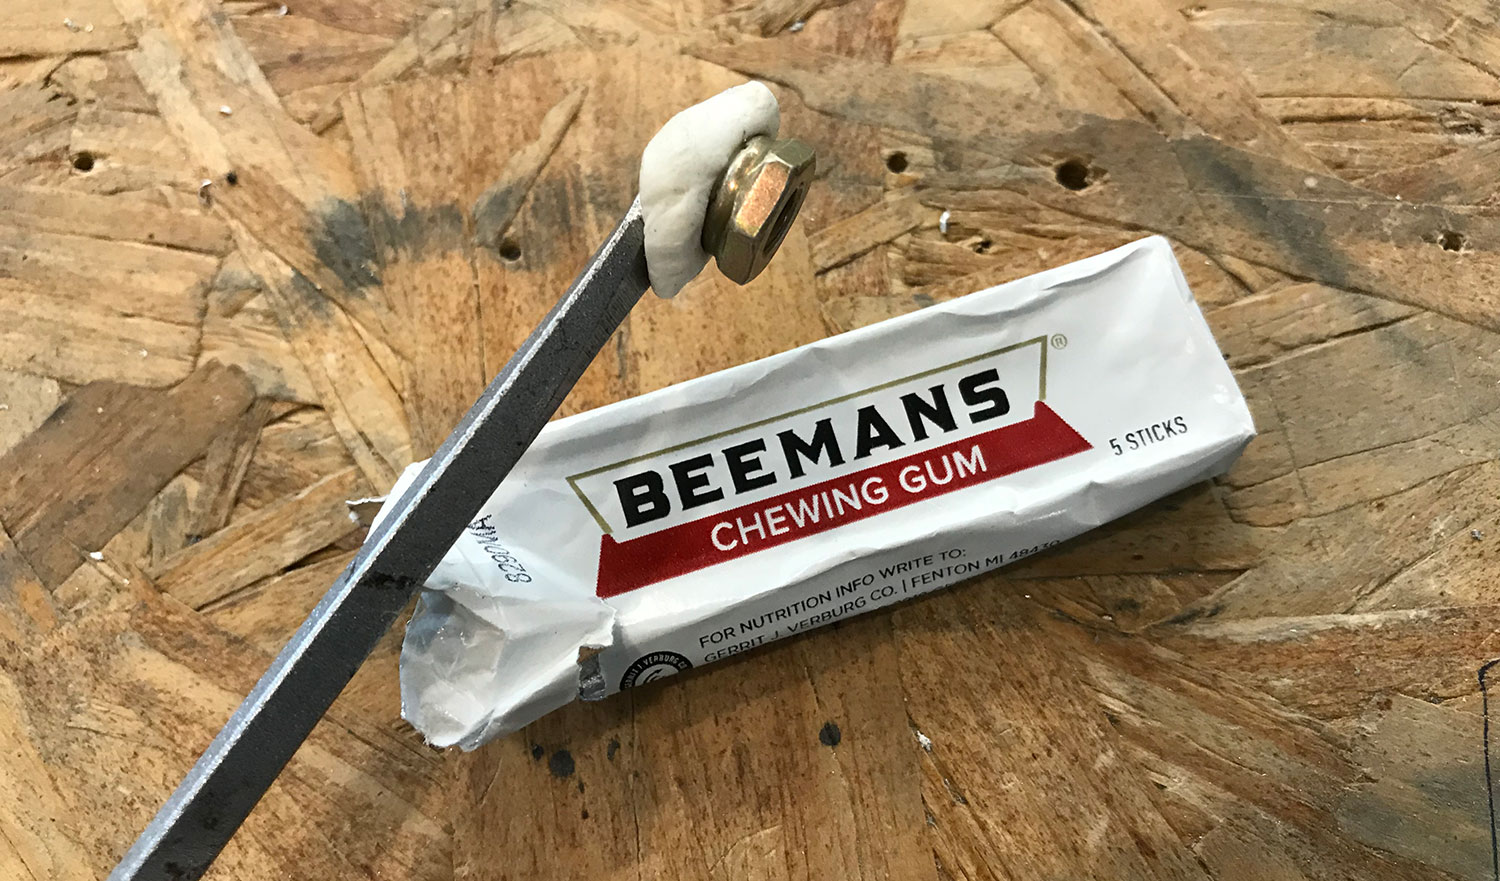 Beemans chewing gum